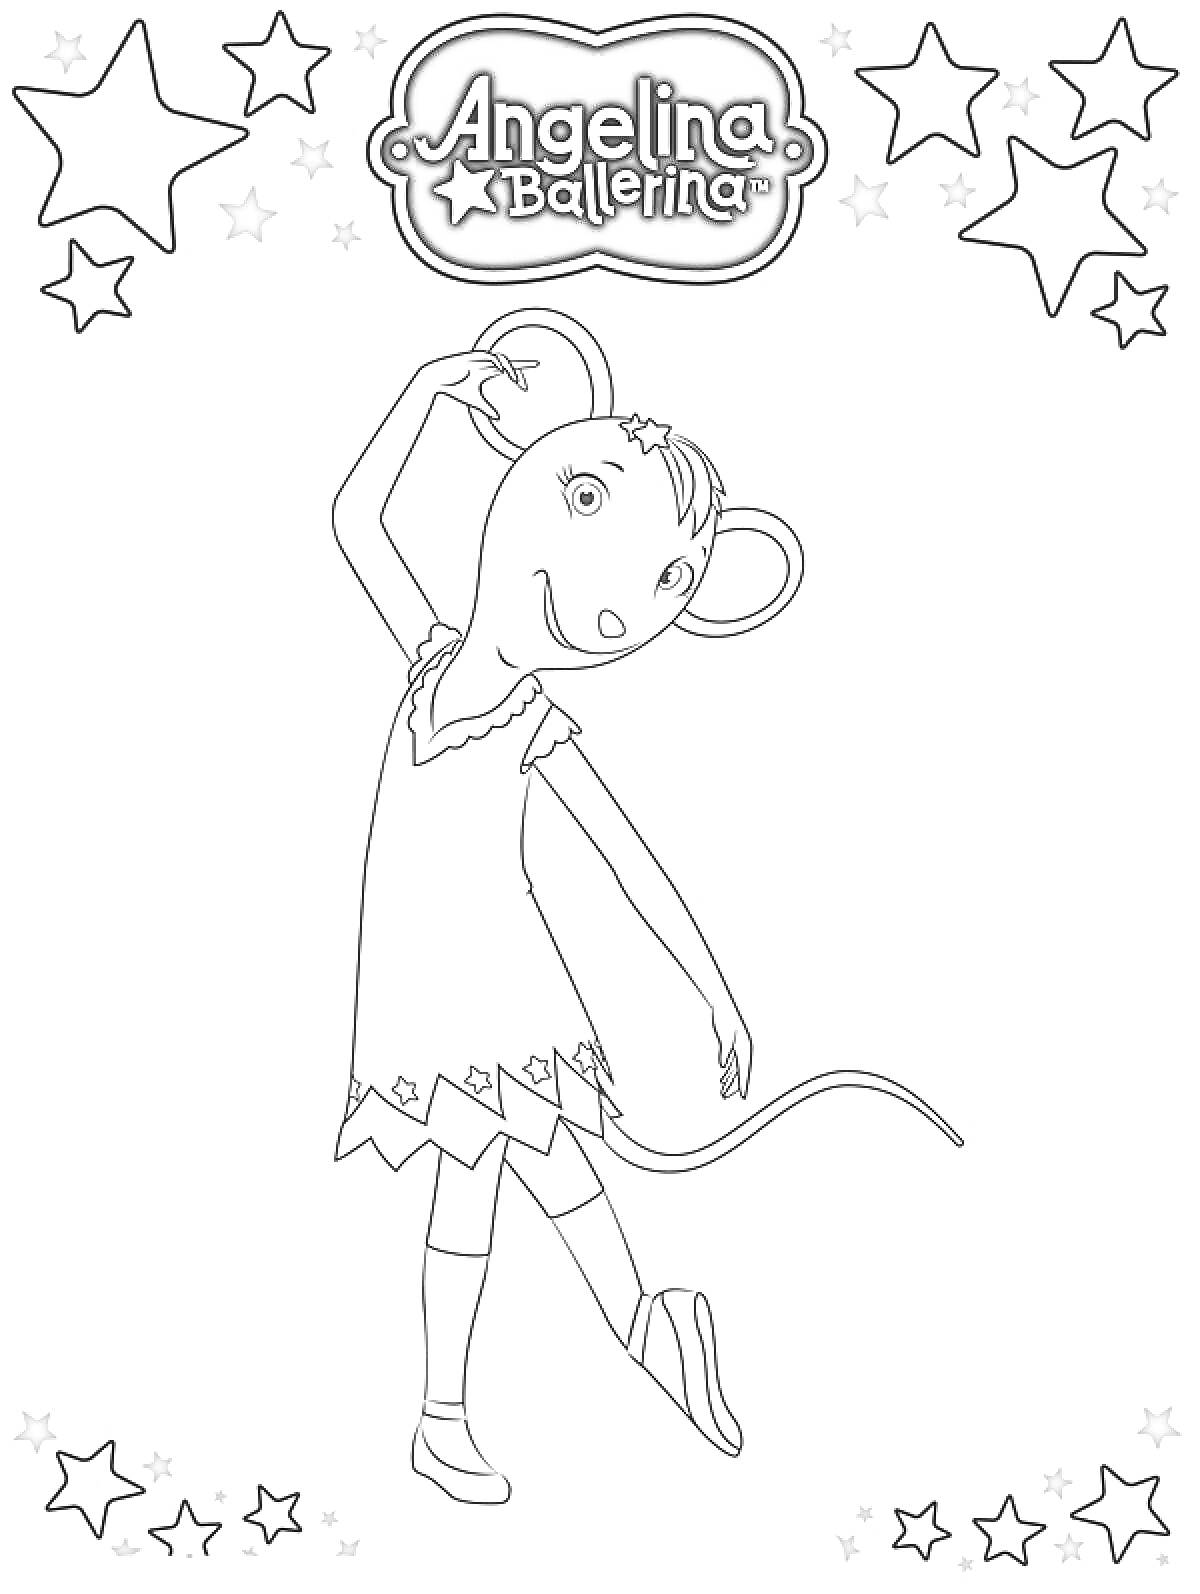 Раскраска Мышка-балерина в пачке, танцующая на одной ноге, обведена звездами